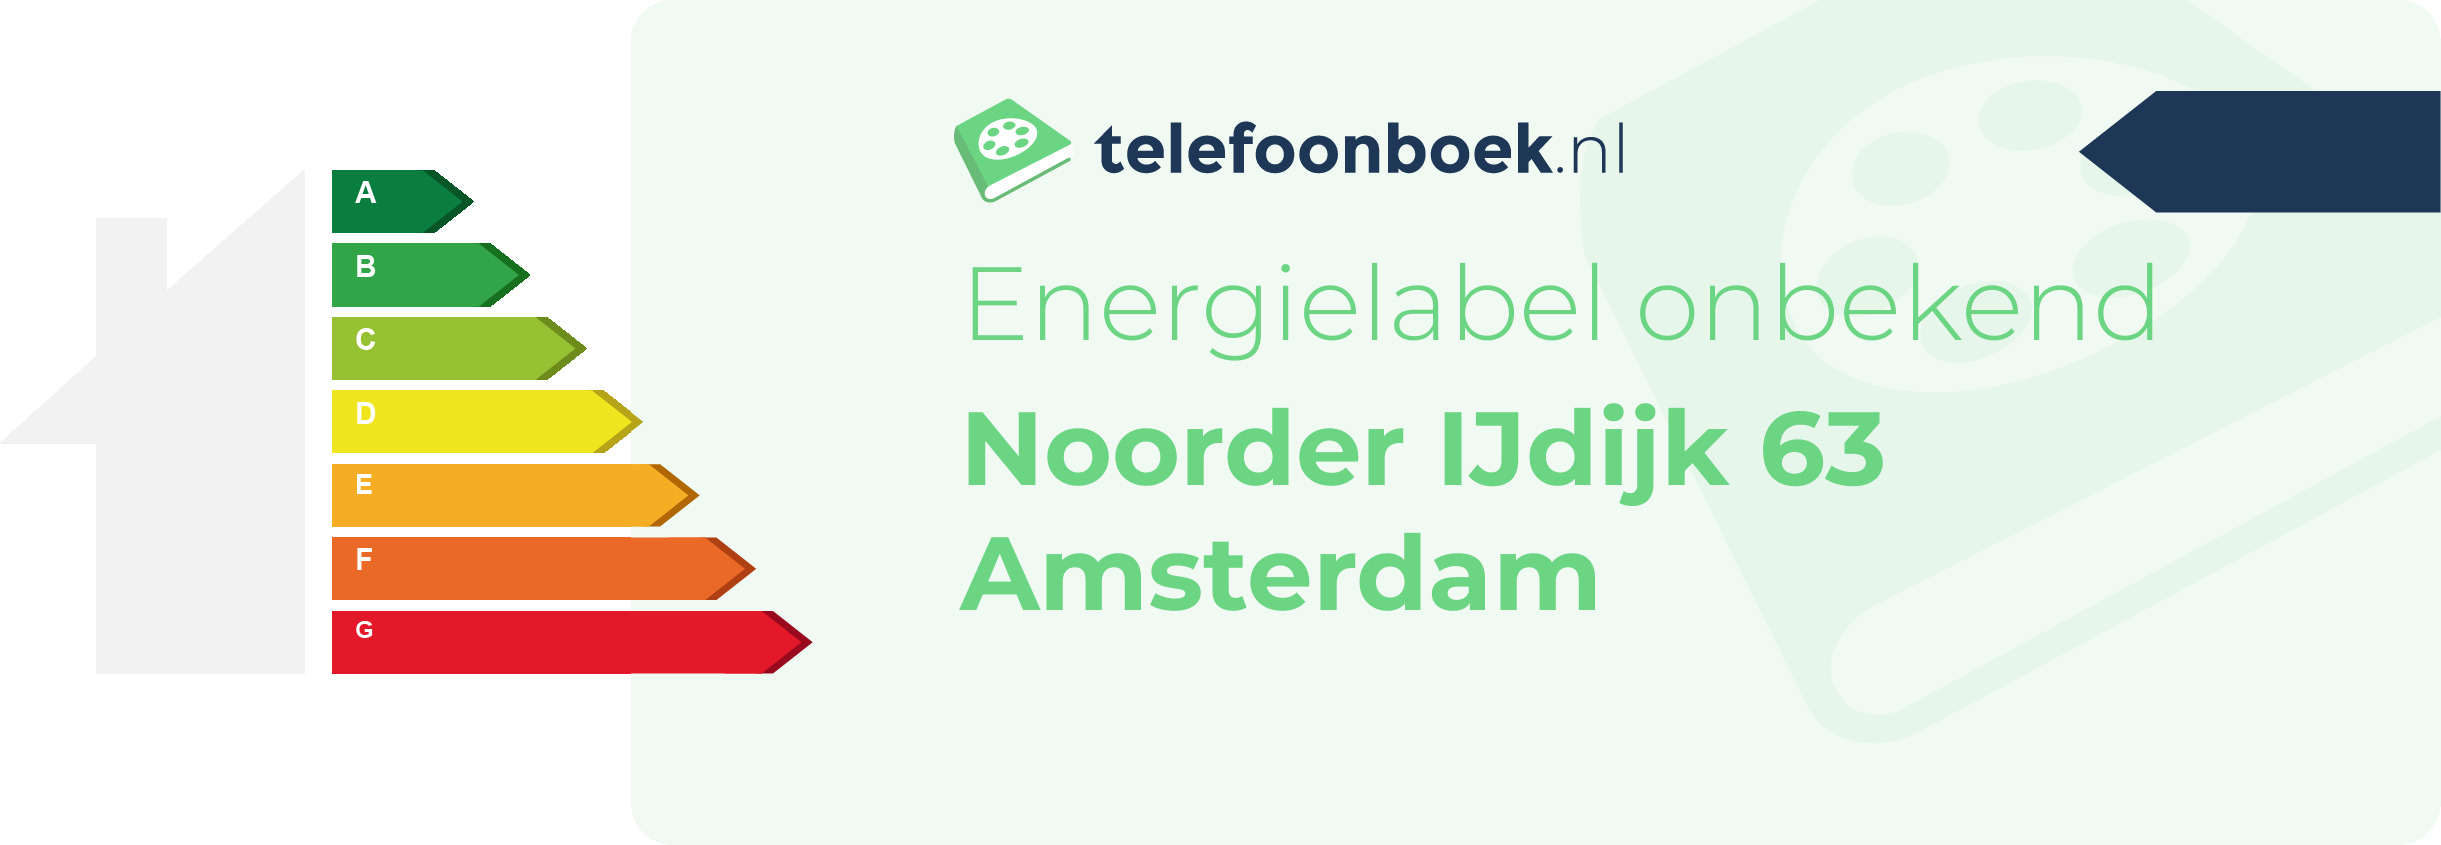 Energielabel Noorder IJdijk 63 Amsterdam